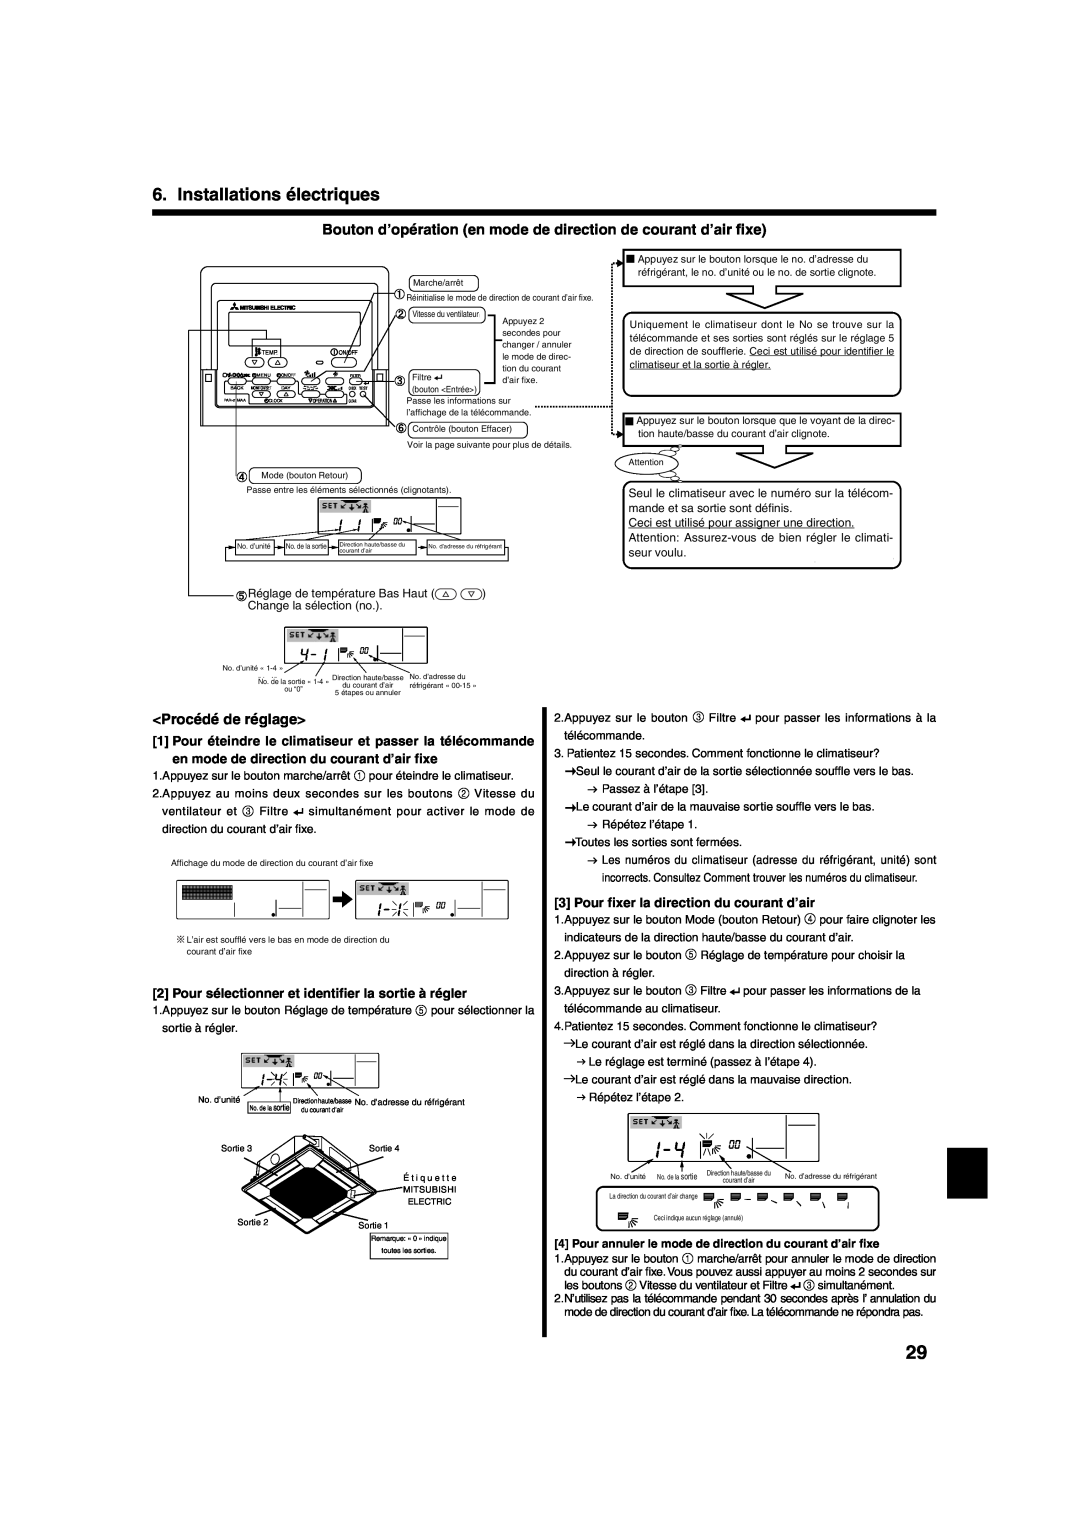 Mitsumi electronic PLA-ABA installation manual Procédé de réglage, Installations électriques 